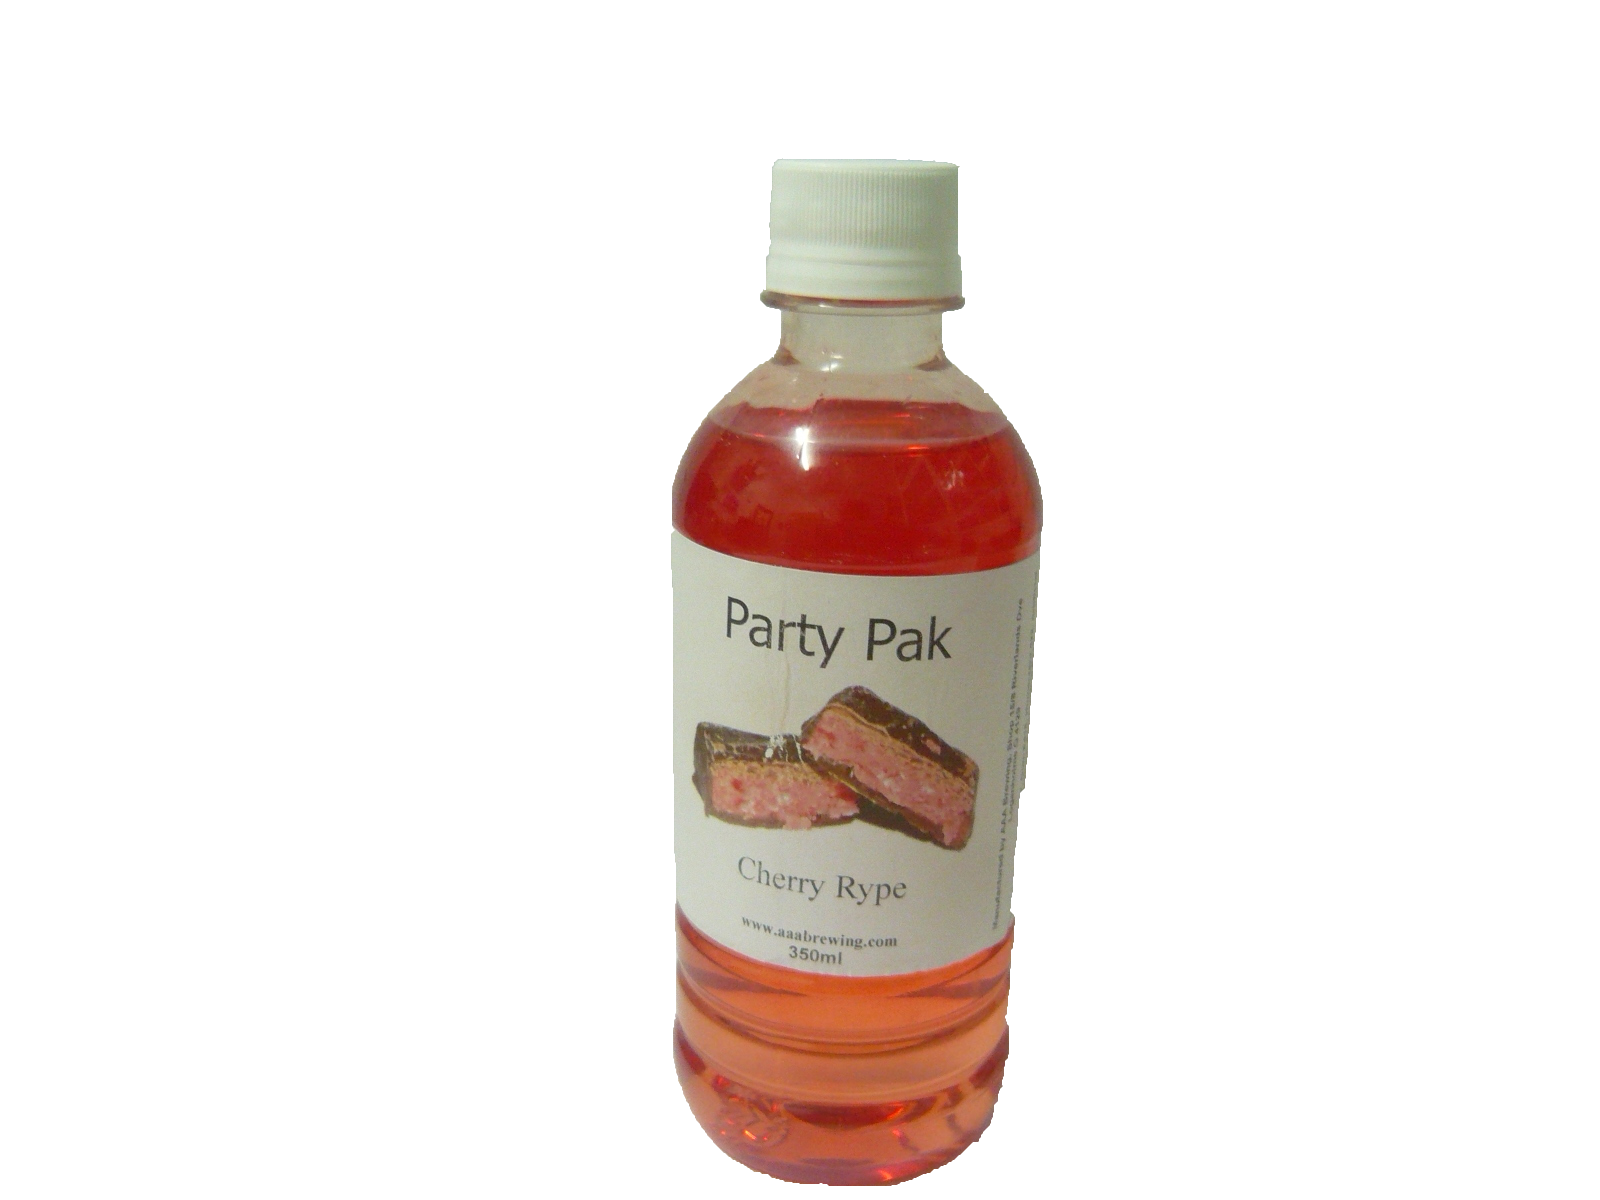 Cherry Rype - Party Pak